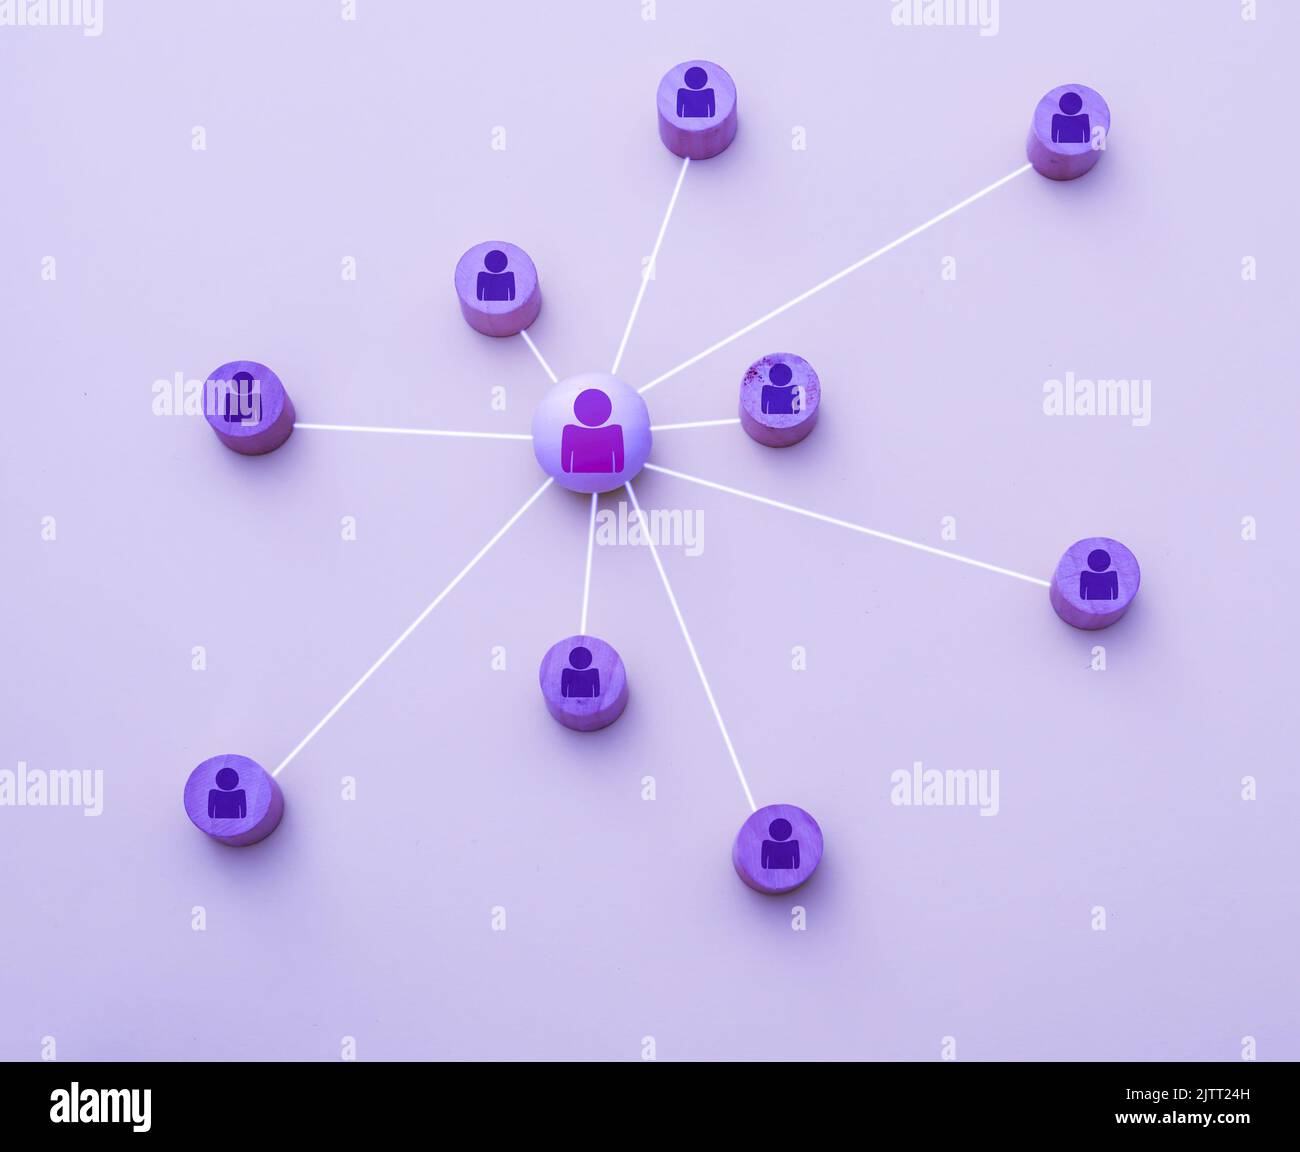 Darstellung mit 3D Icons eines Netzwerks von Social-Media-Kontakten auf violettem Hintergrund Stockfoto